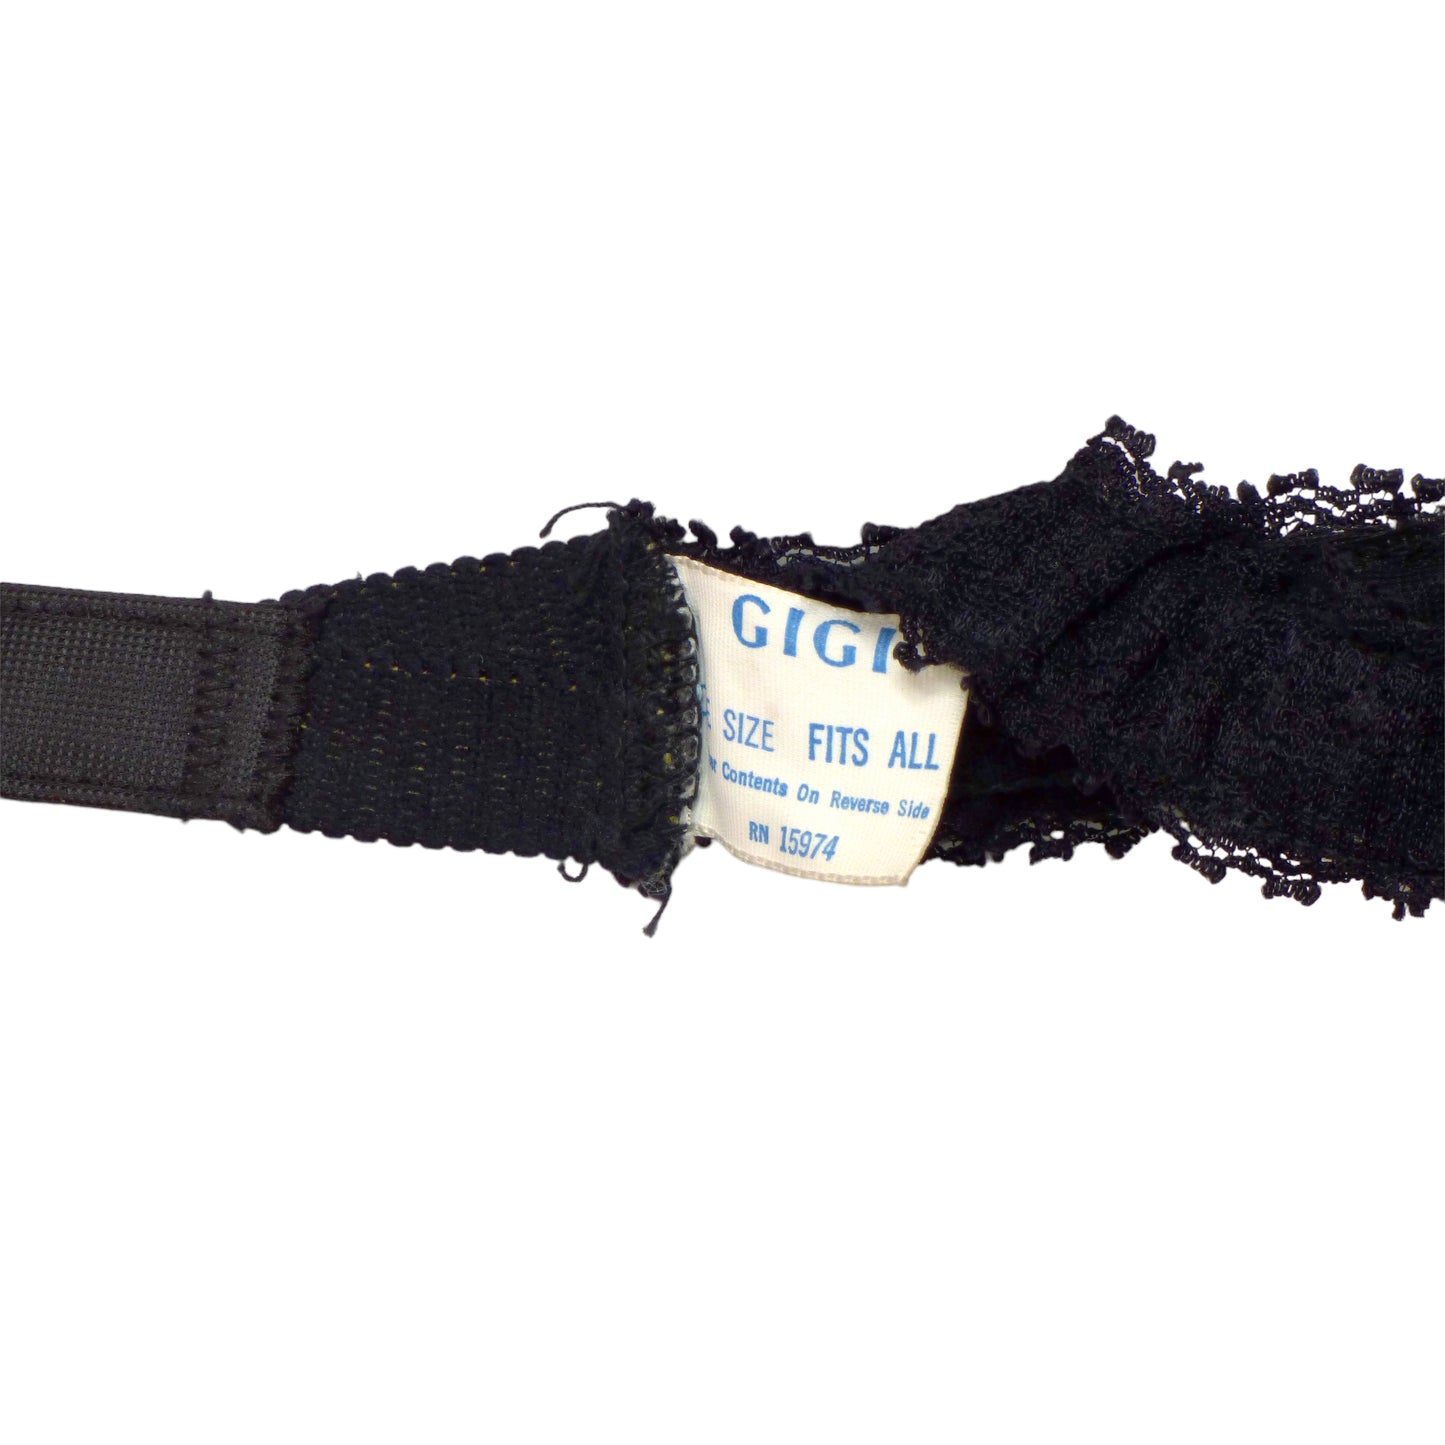 1970s Black Lace Lingerie Set, Size-6 to 10